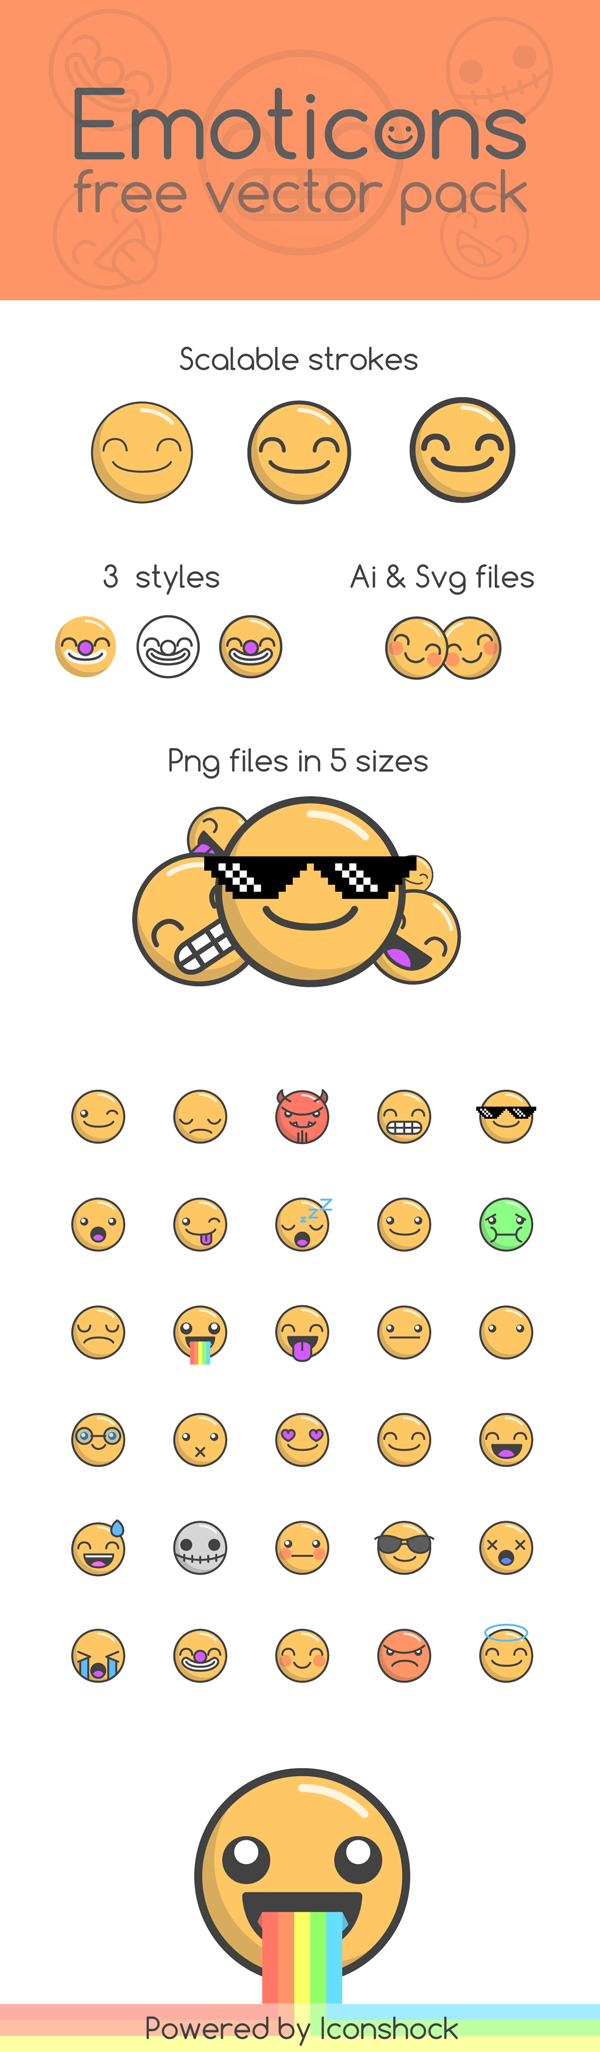 emoji-icons-600